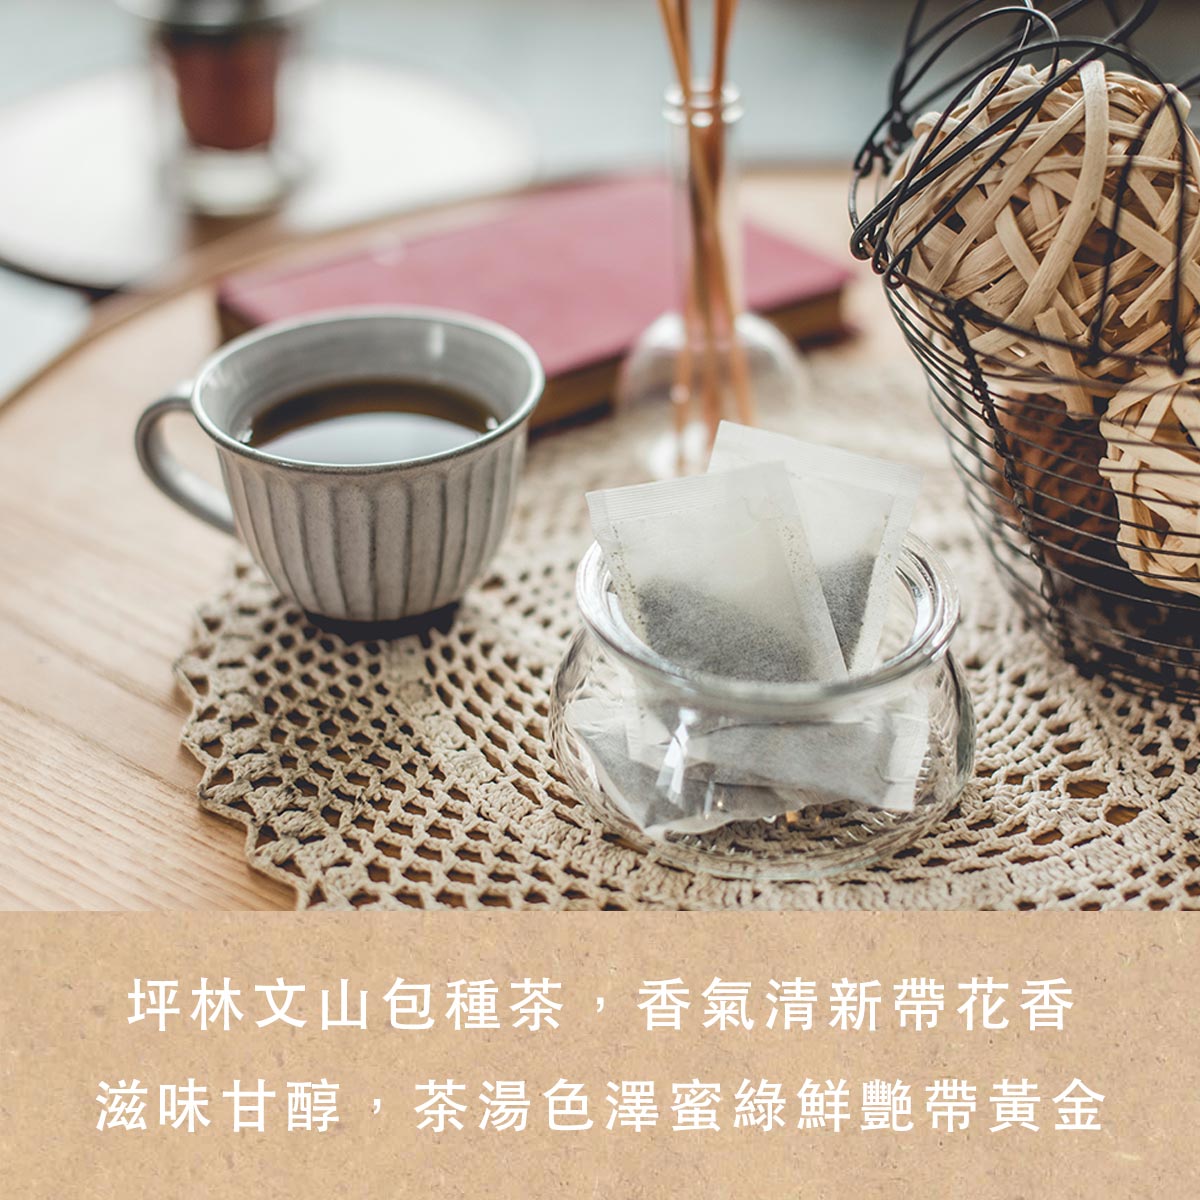 台灣旅遊必買的特產零食推薦包種茶葉